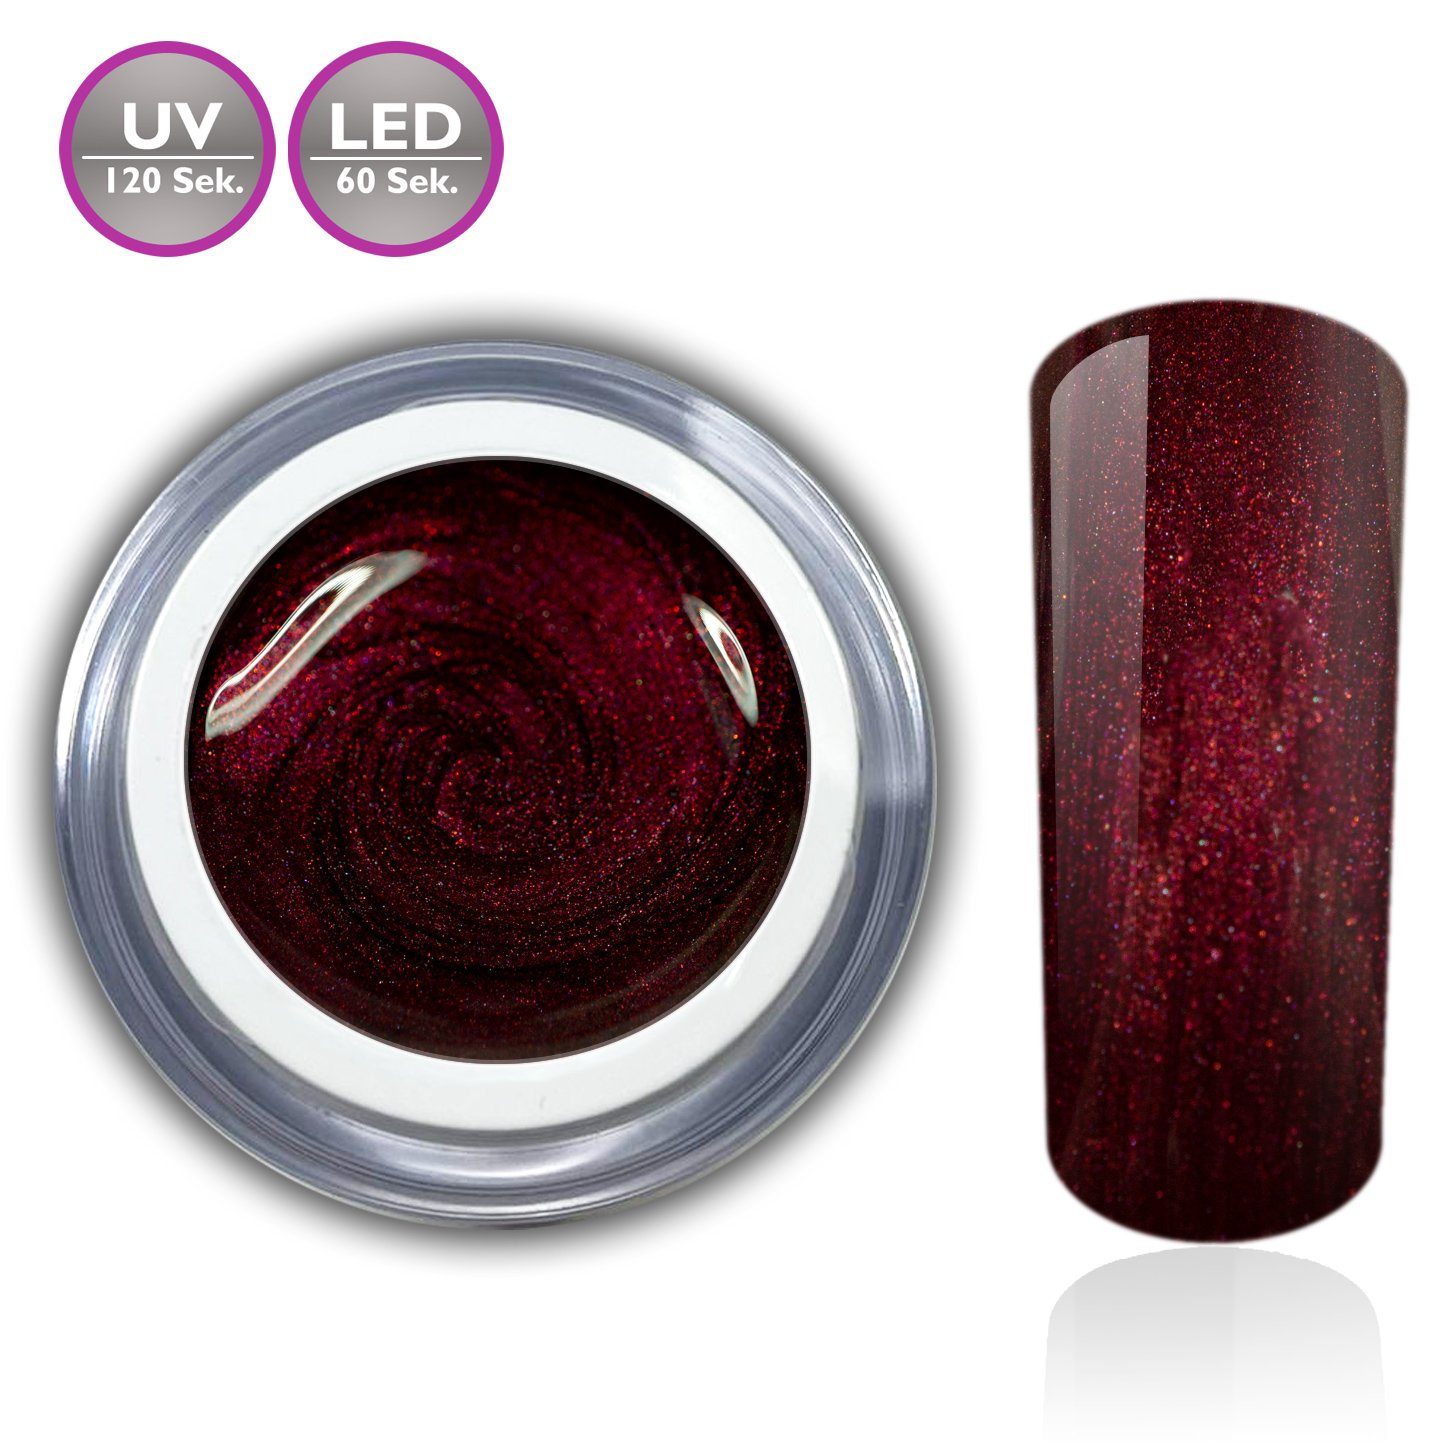 RM Beautynails UV-Gel Ledgel 5ml 5 x Set UV-Gel Rot Set Farbgel Nagelgel